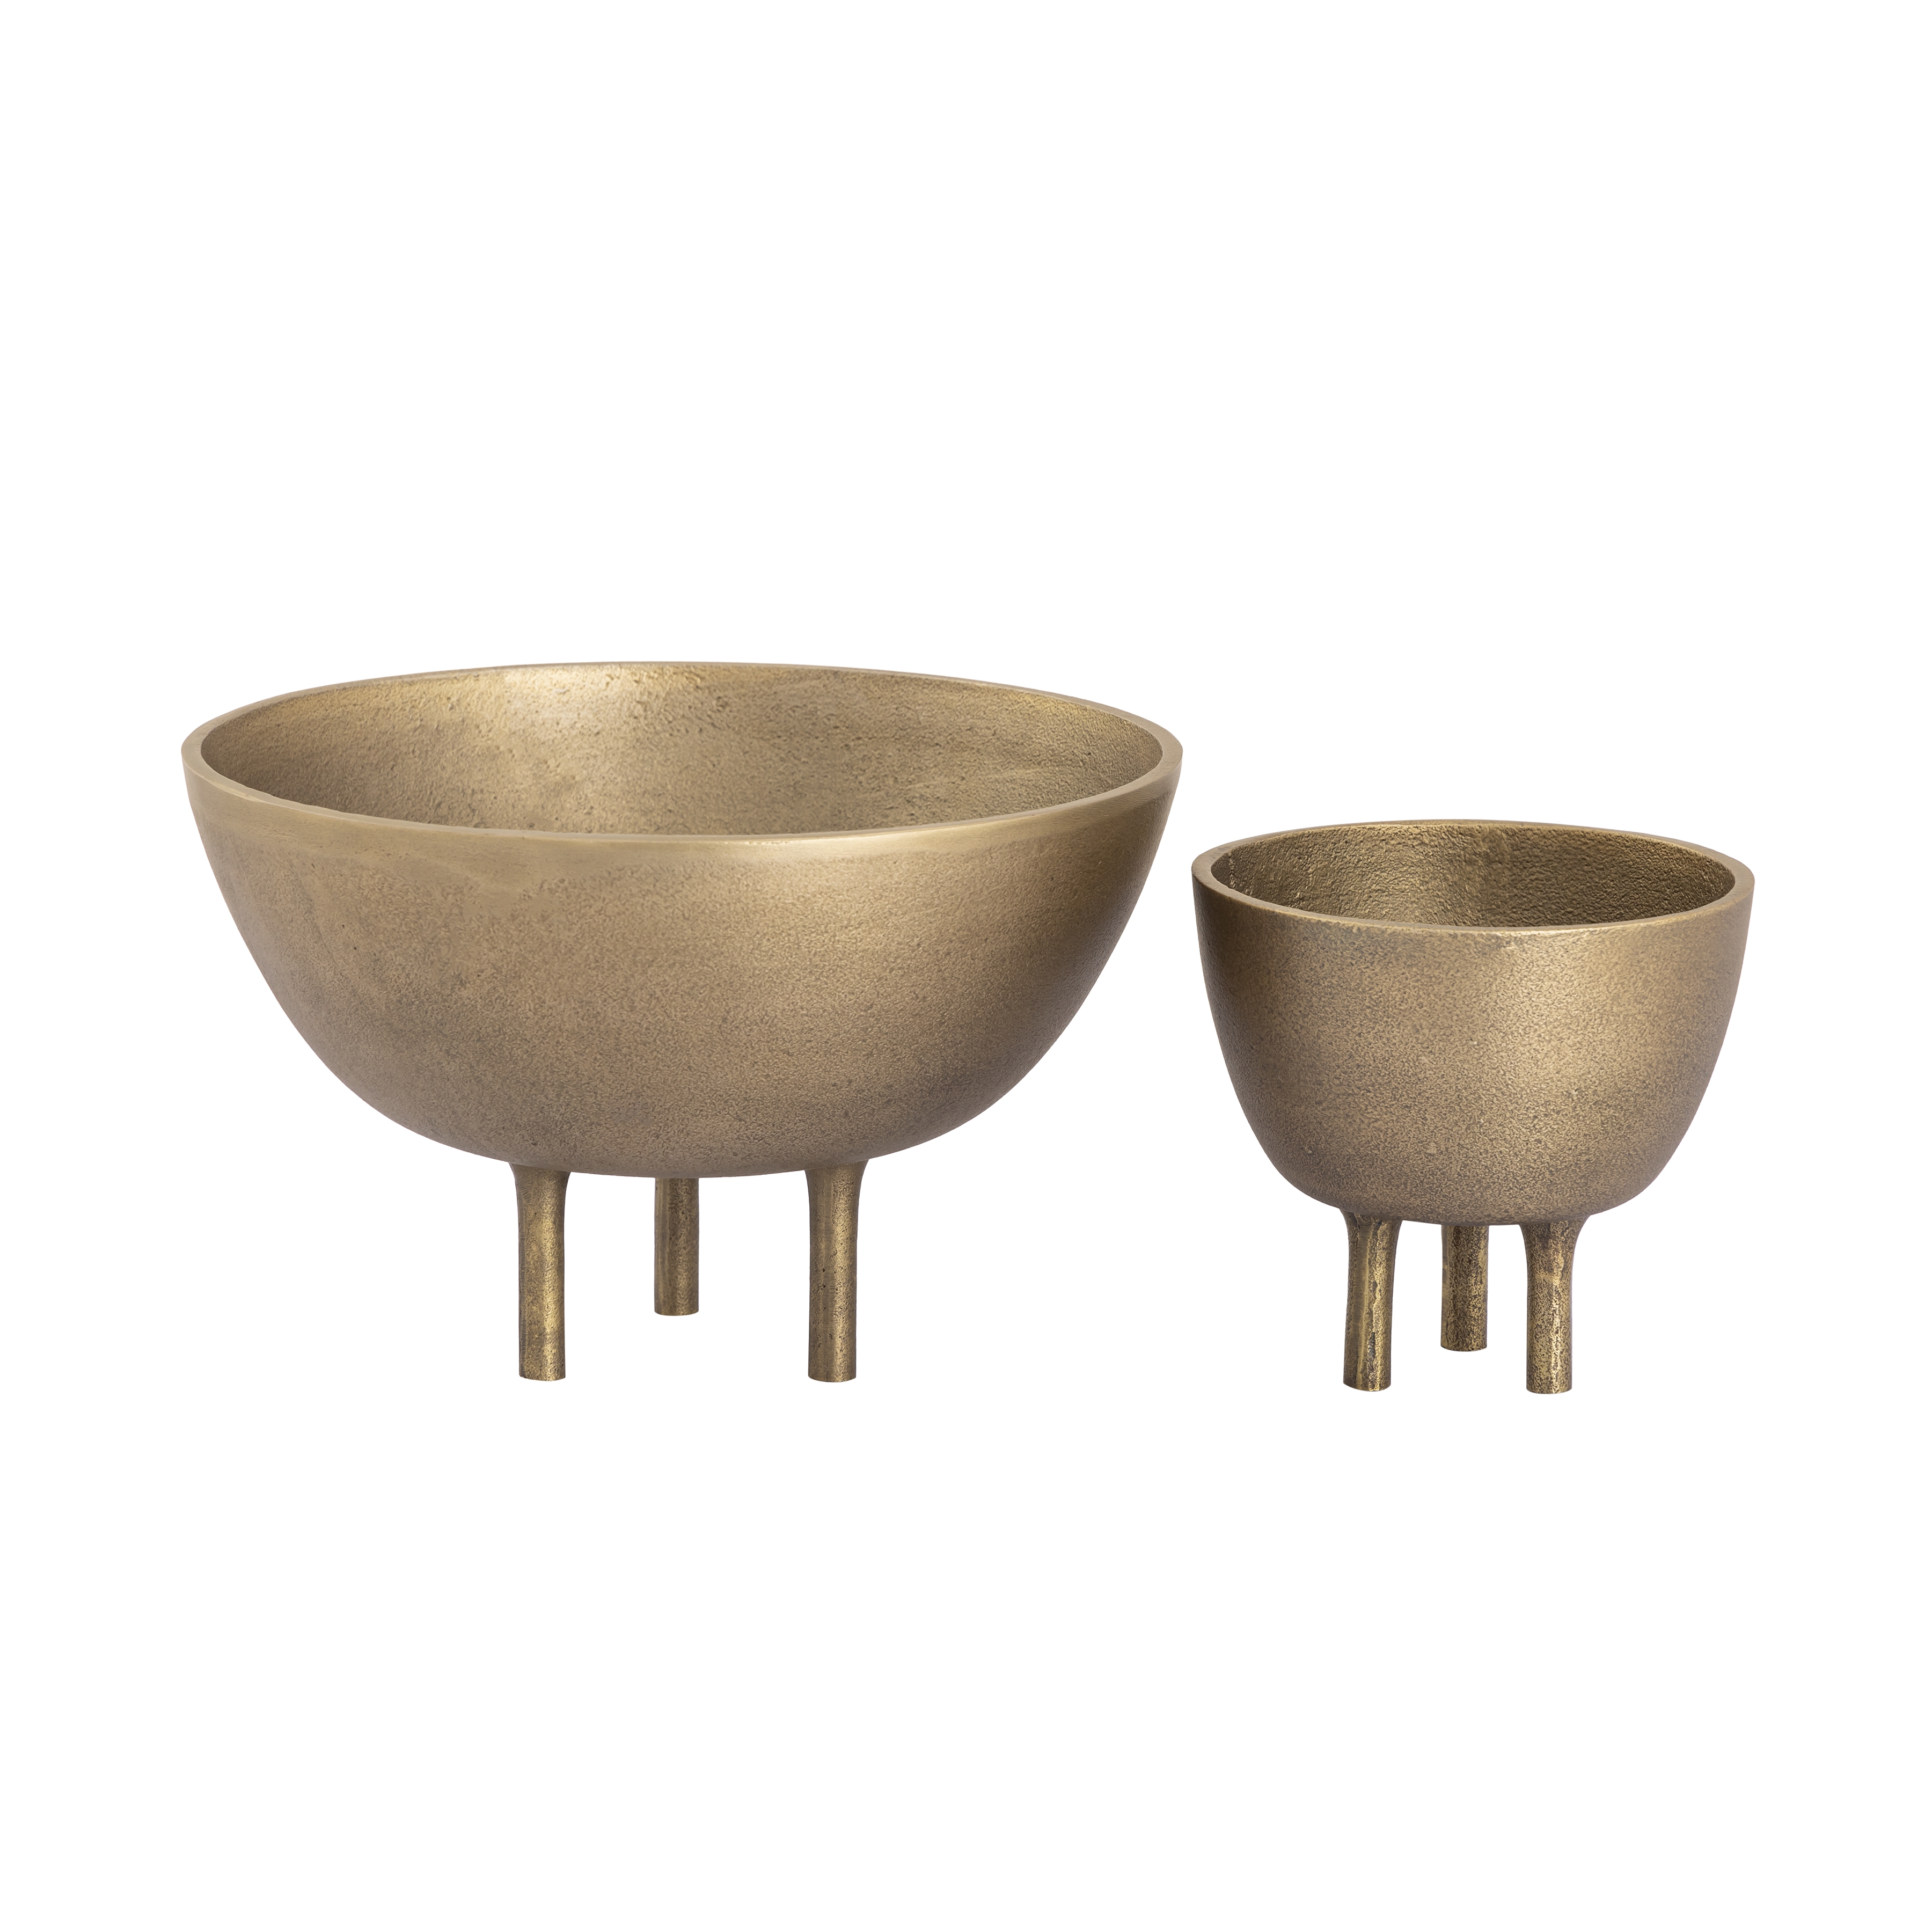 Kiser Bowl - Small Brass - Image 2